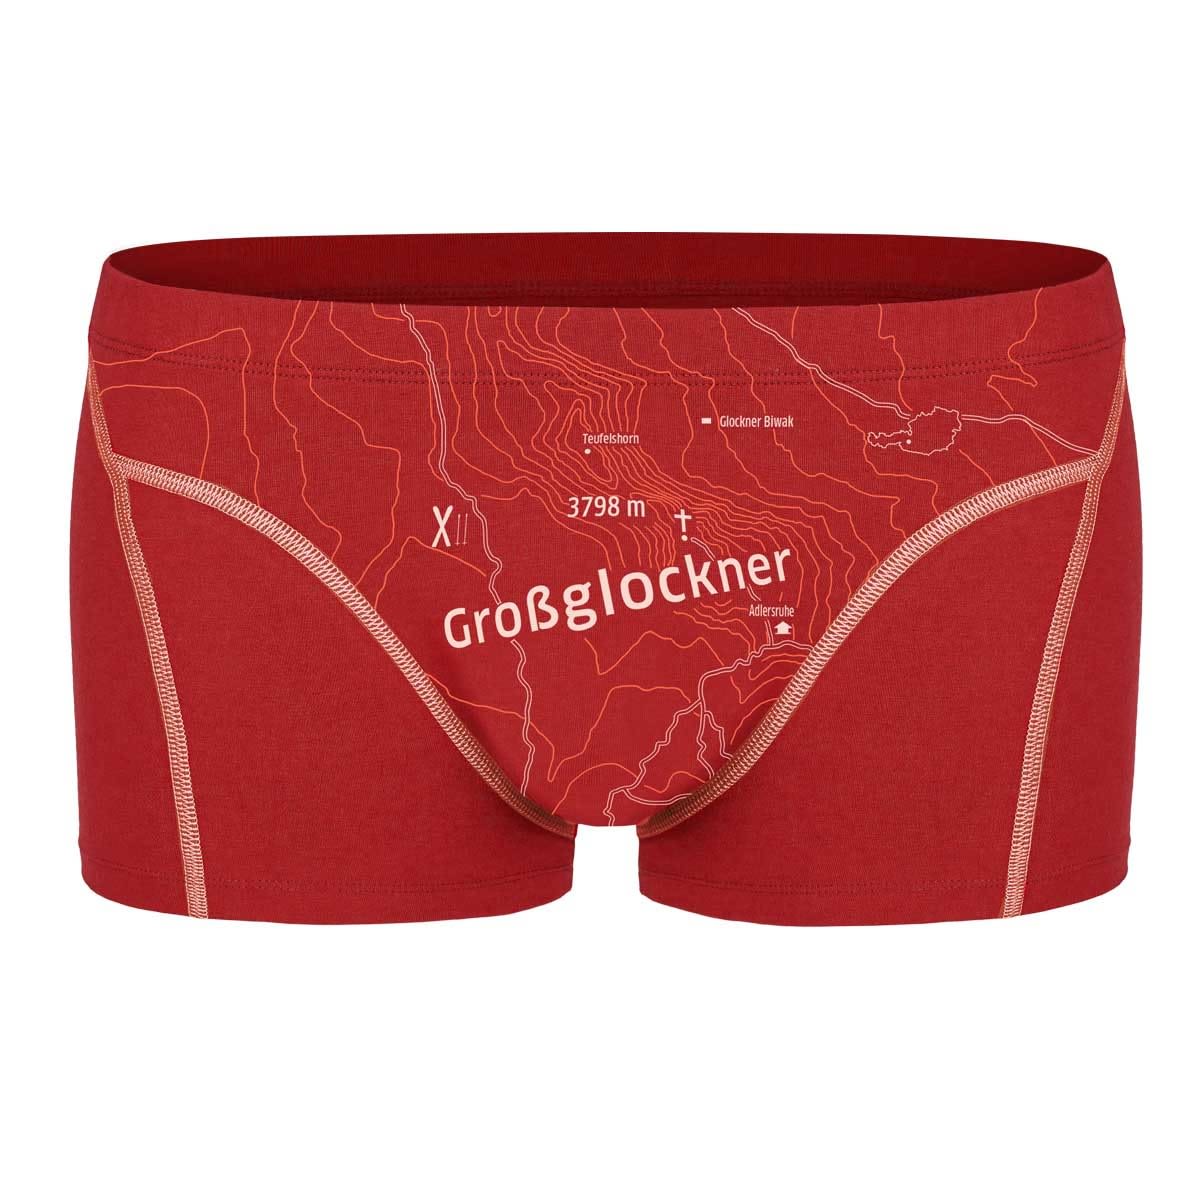 Ein schöner Fleck Erde Grossglockner Boxer Rot, Male Unterwäsche, Größe L - Farbe Karminrot 2304.13